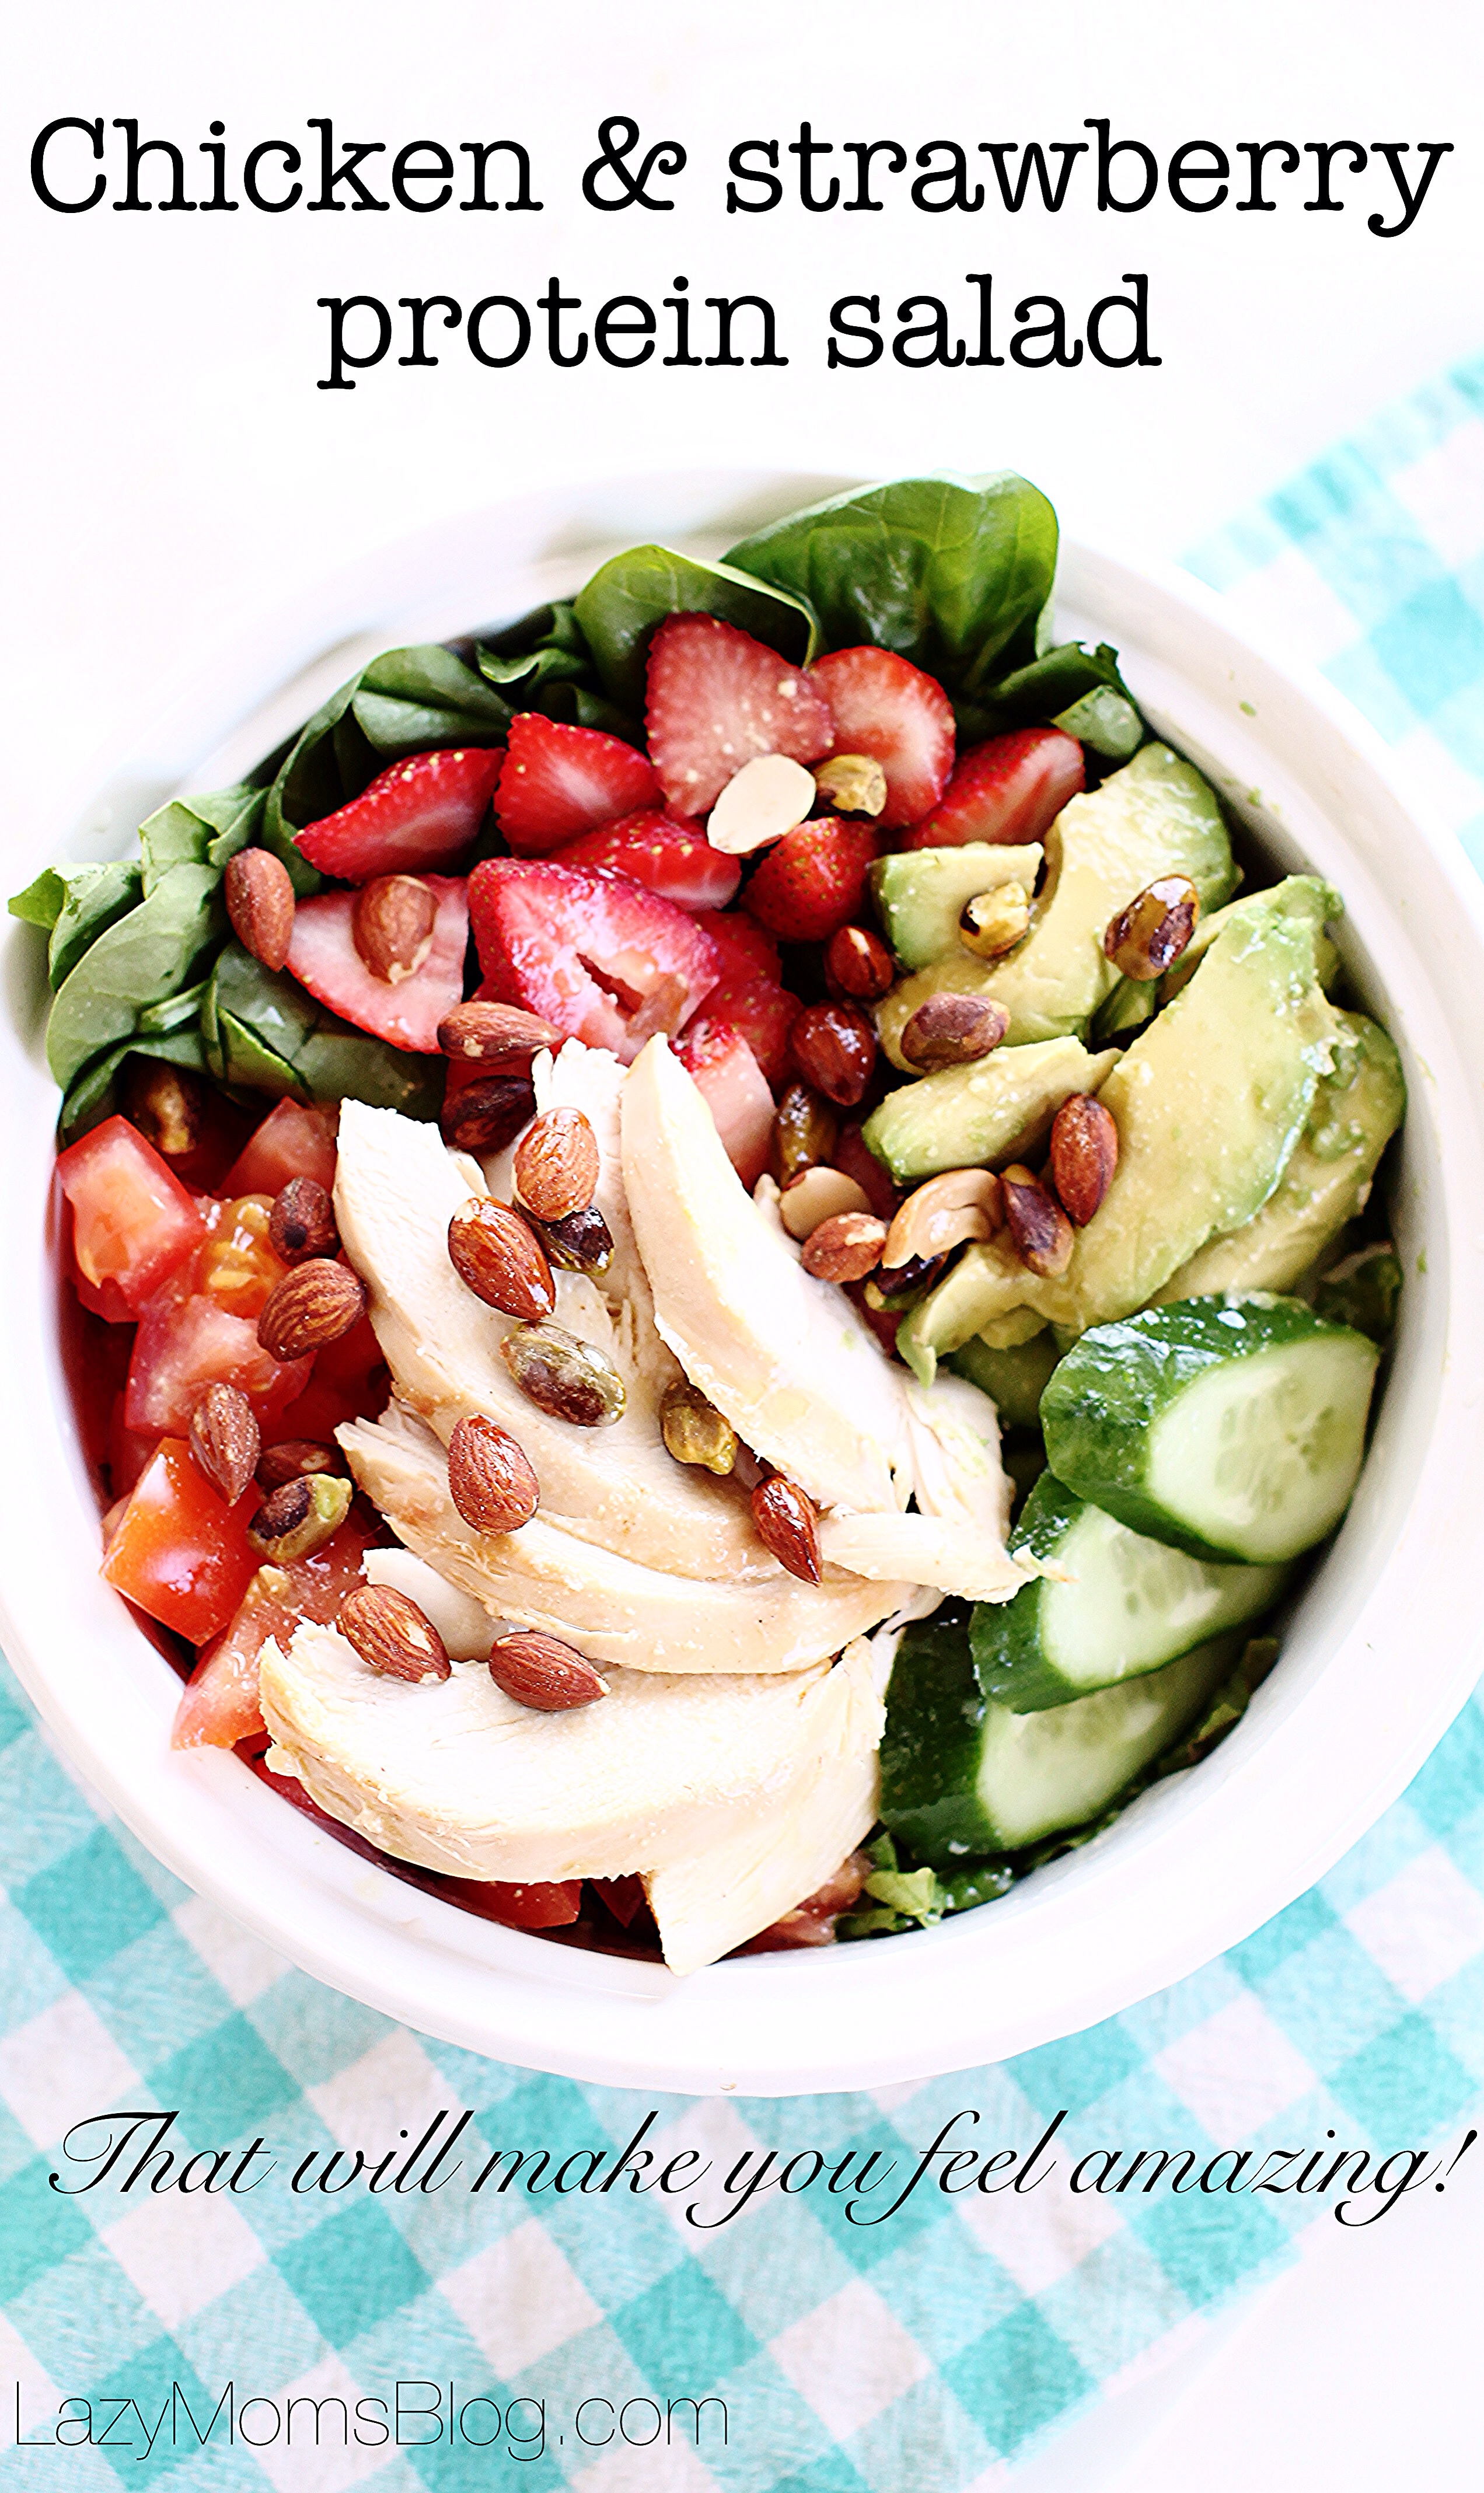 Strawberry chicken protein salad